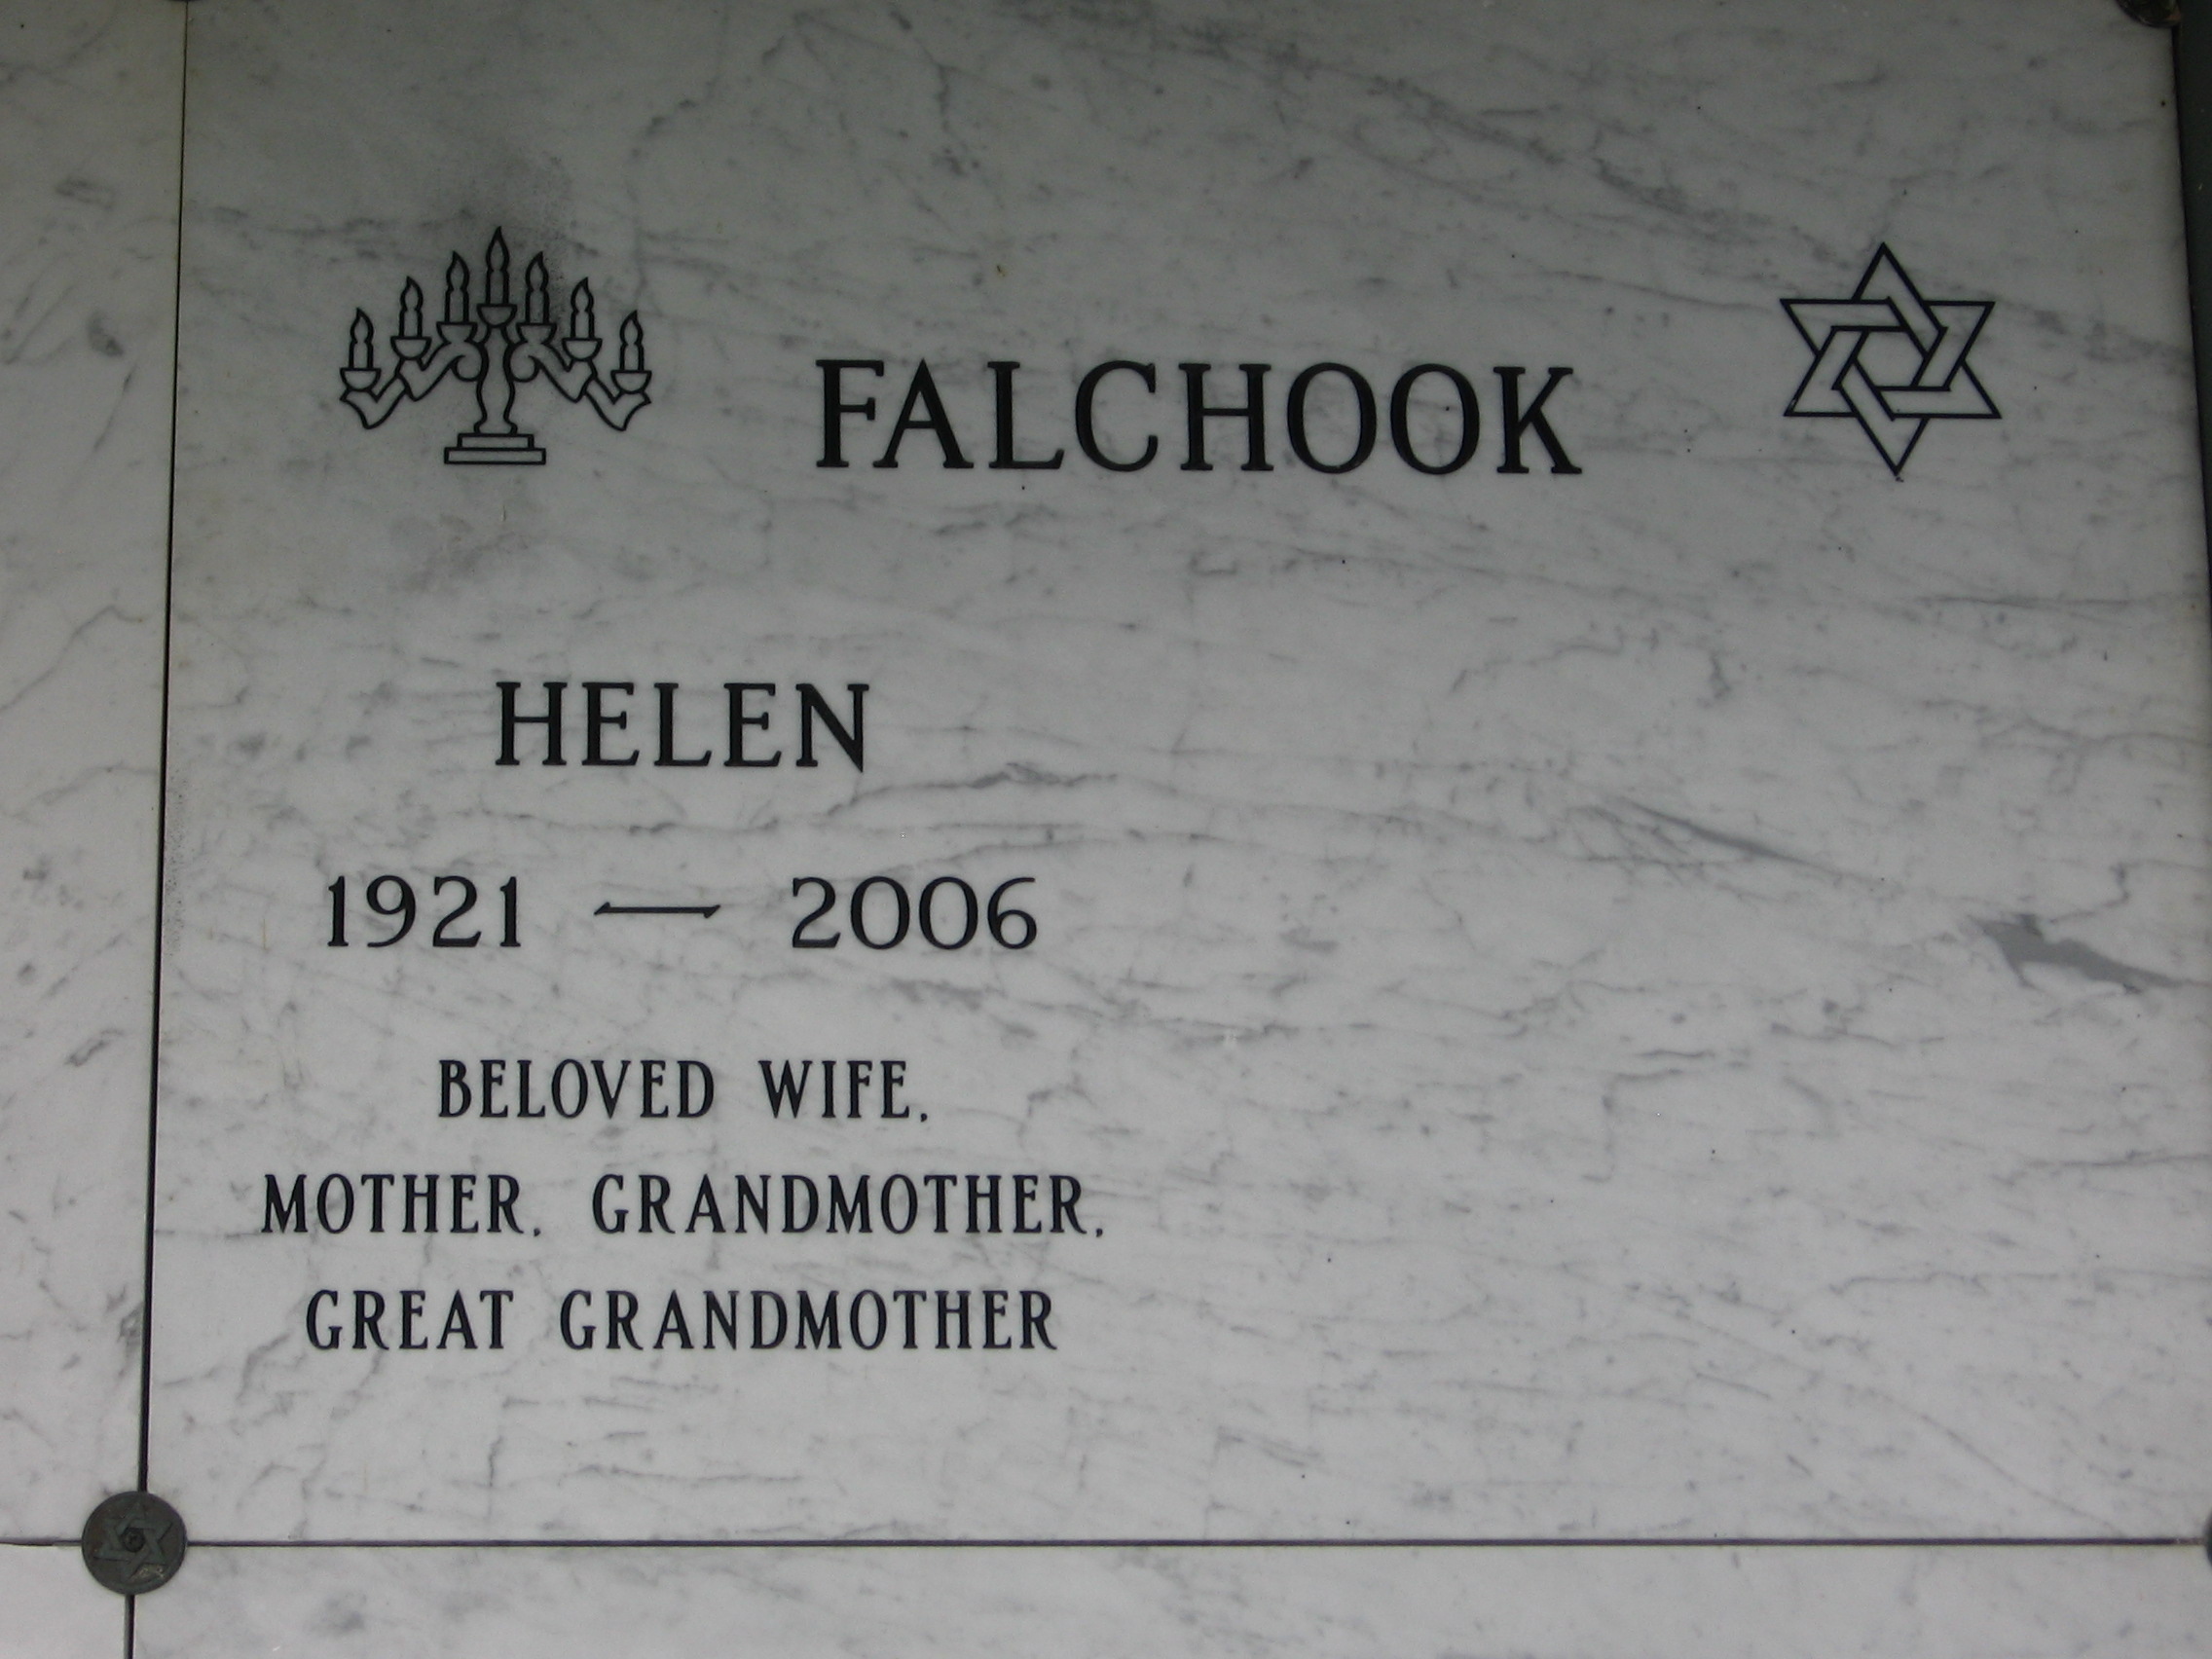 Helen Falchook